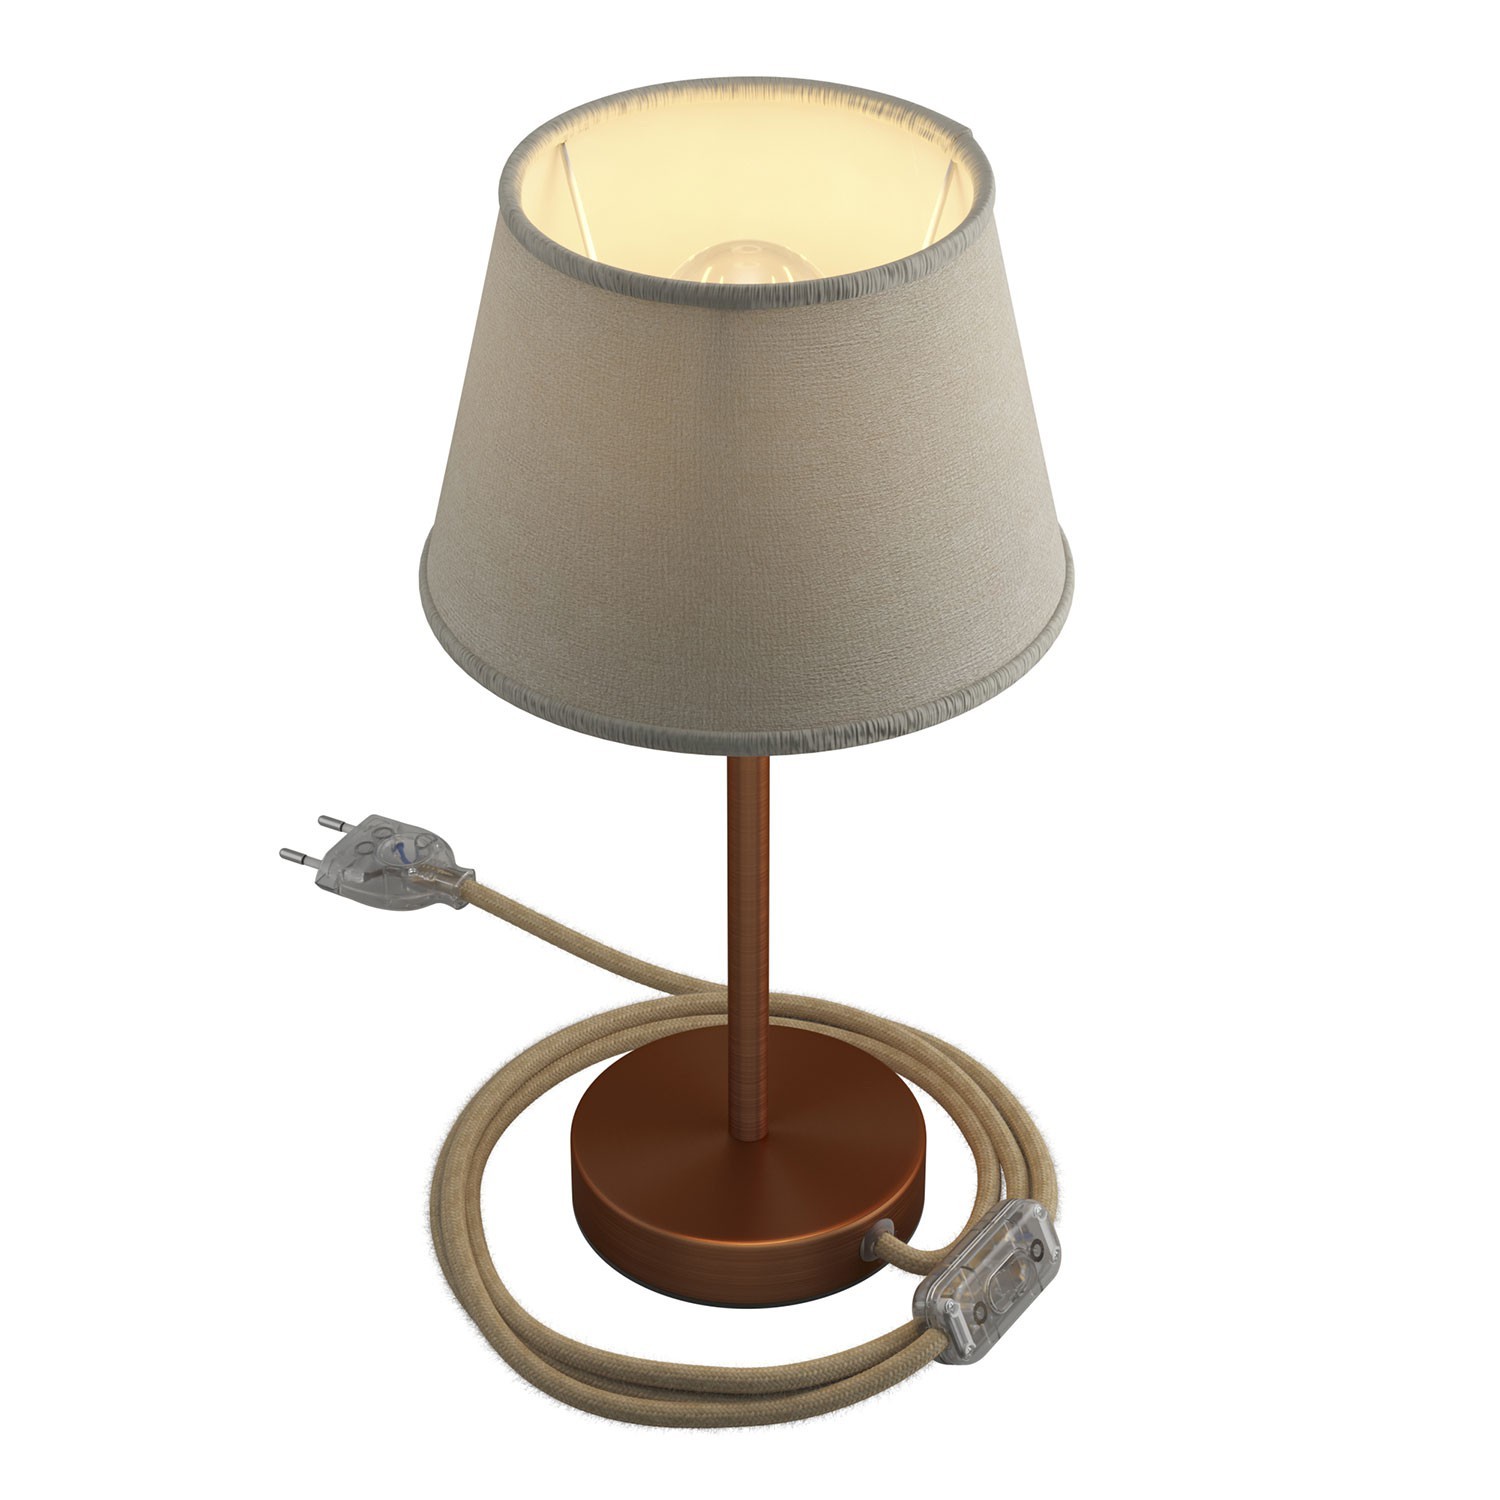 Alzaluce se stínidlem Impero, kovová stolní lampa se zástrčkou, kabelem a vypínačem